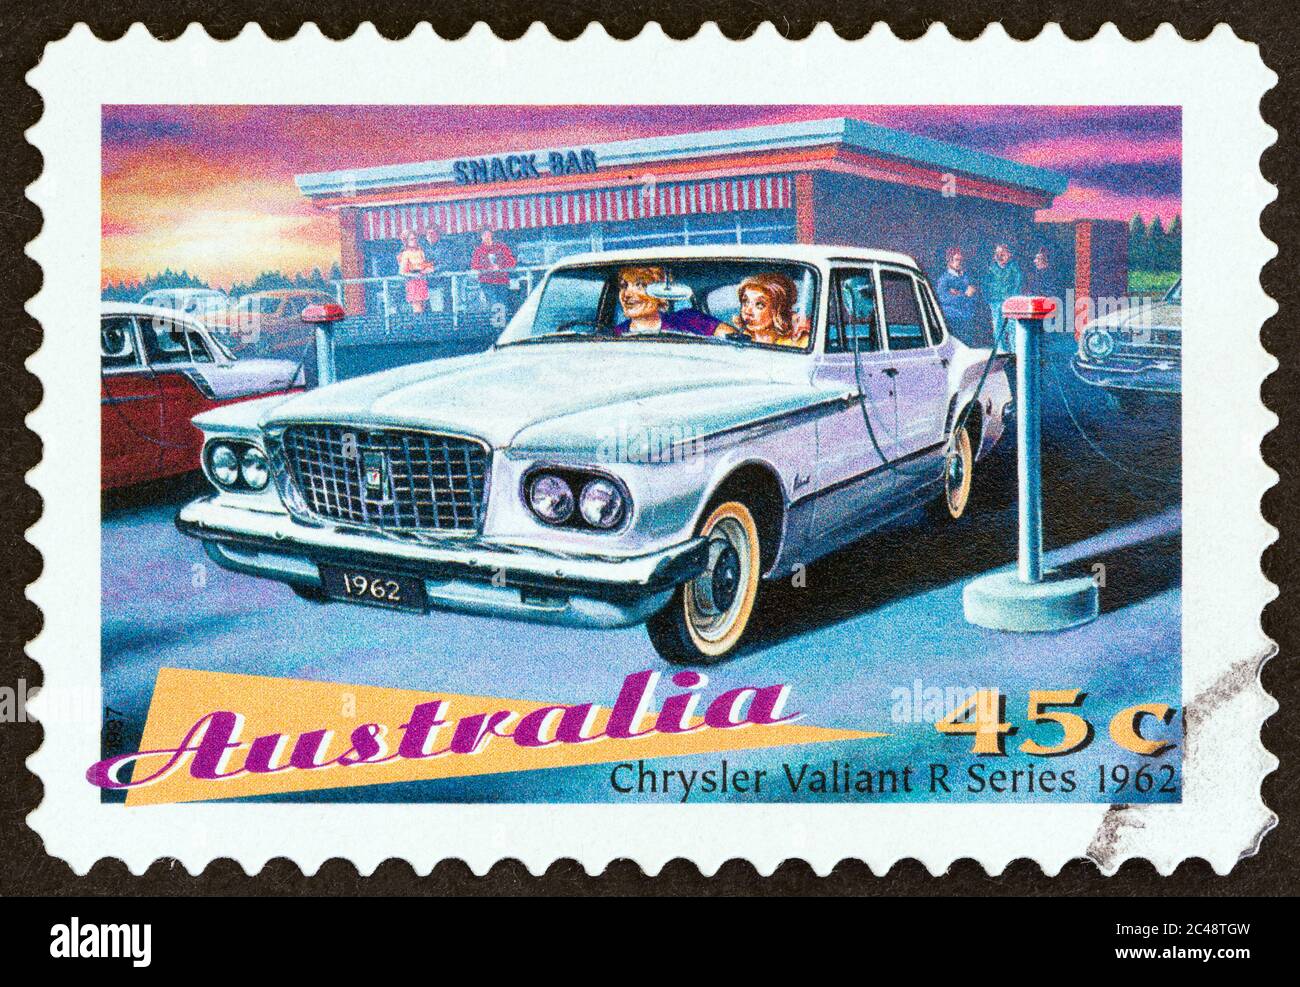 AUSTRALIE - VERS 1997 : un timbre imprimé en Australie dans le numéro « Classic Cars » montre la berline Chrysler Valiant série R, 1962, vers 1997. Banque D'Images